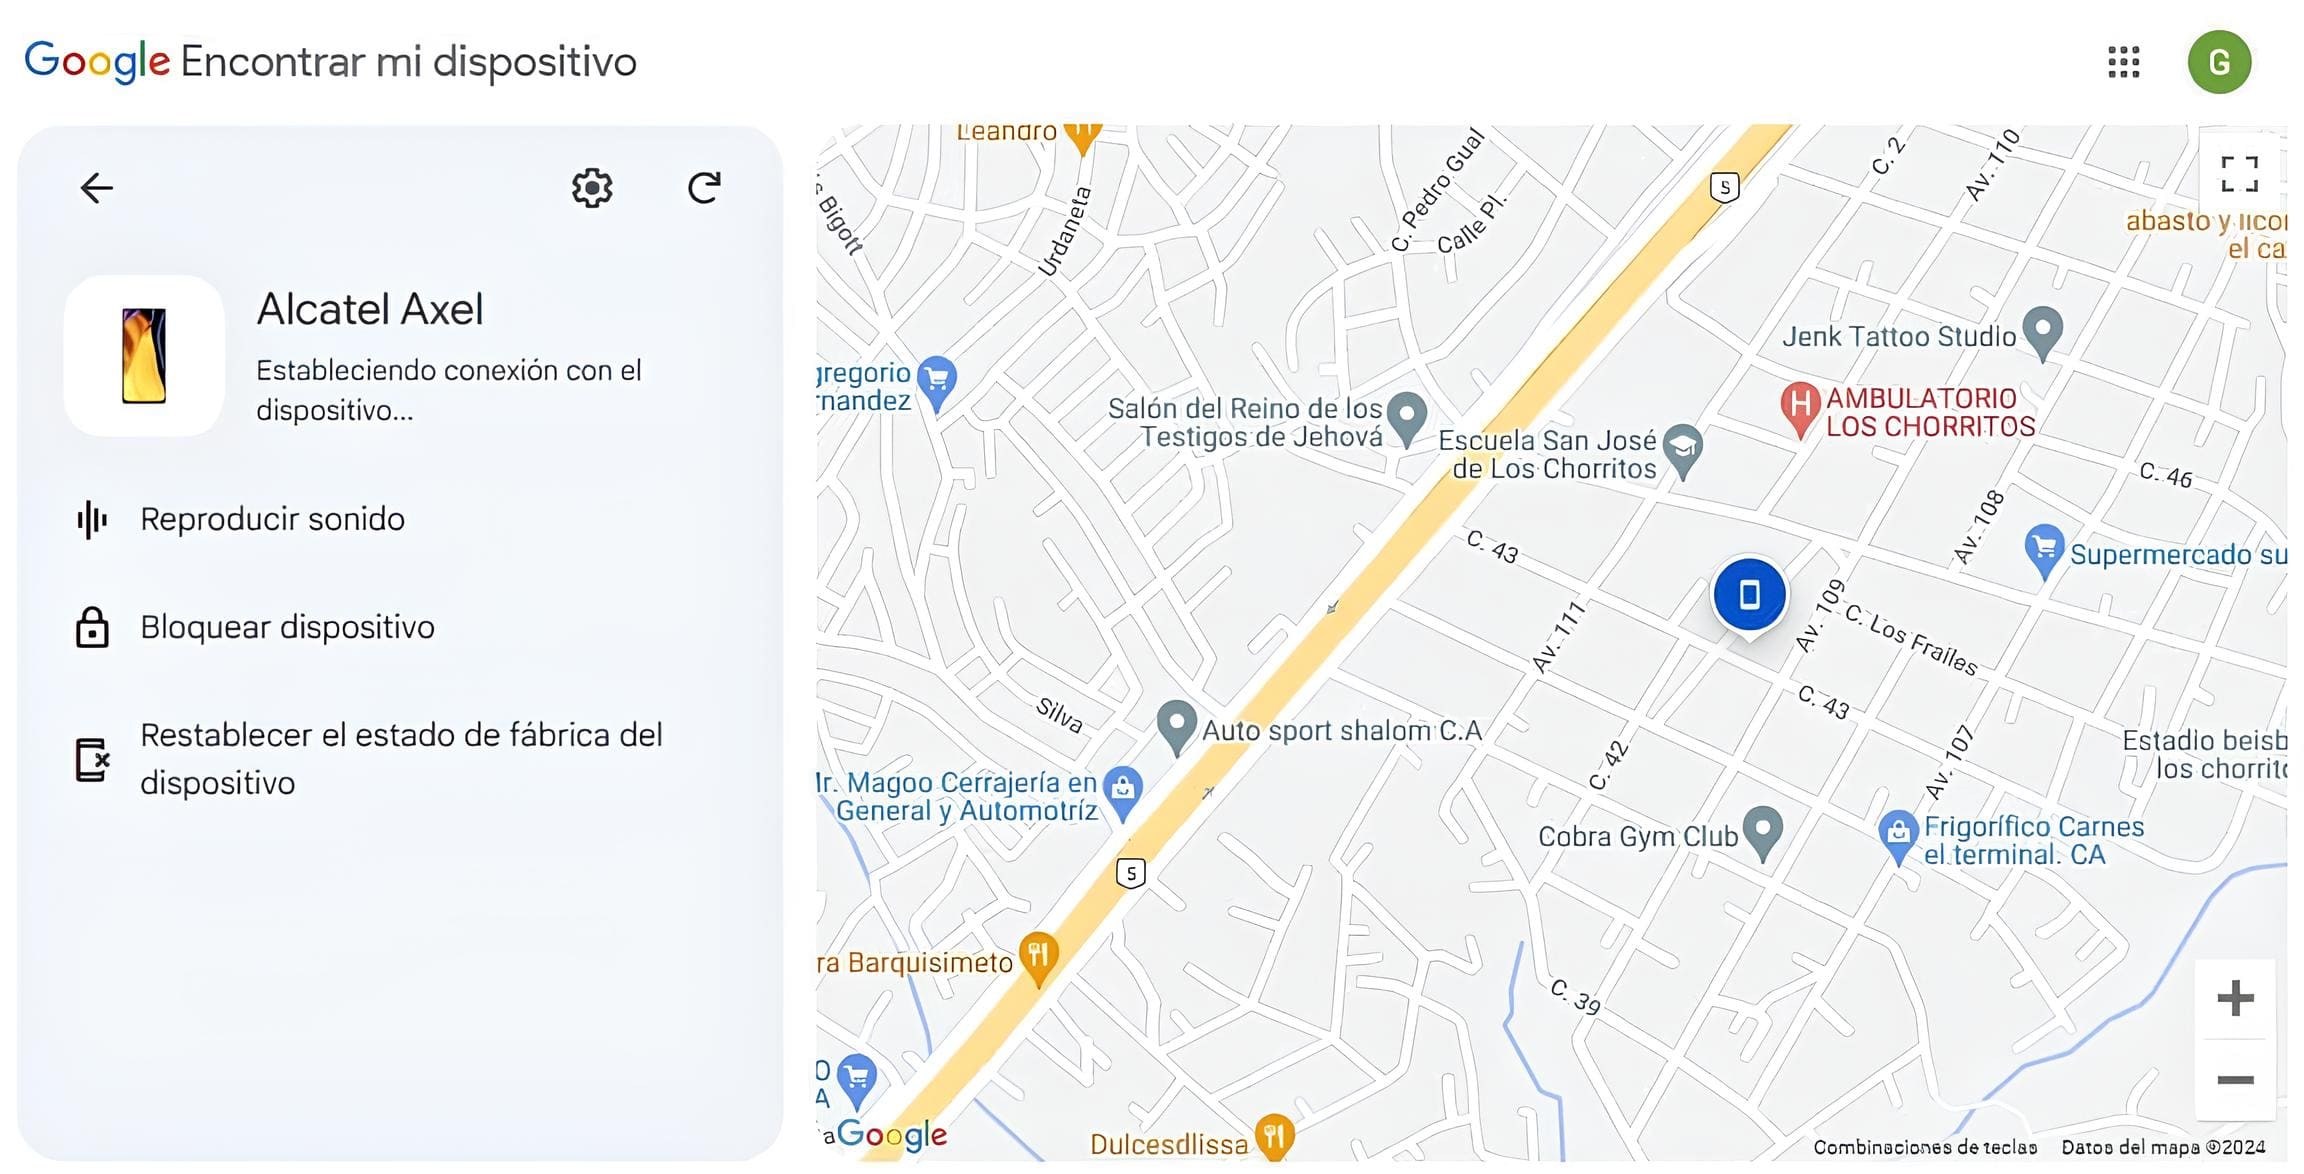 Imagen de la ubicación de un teléfono Alcatel encontrado mediante Google Find My Device